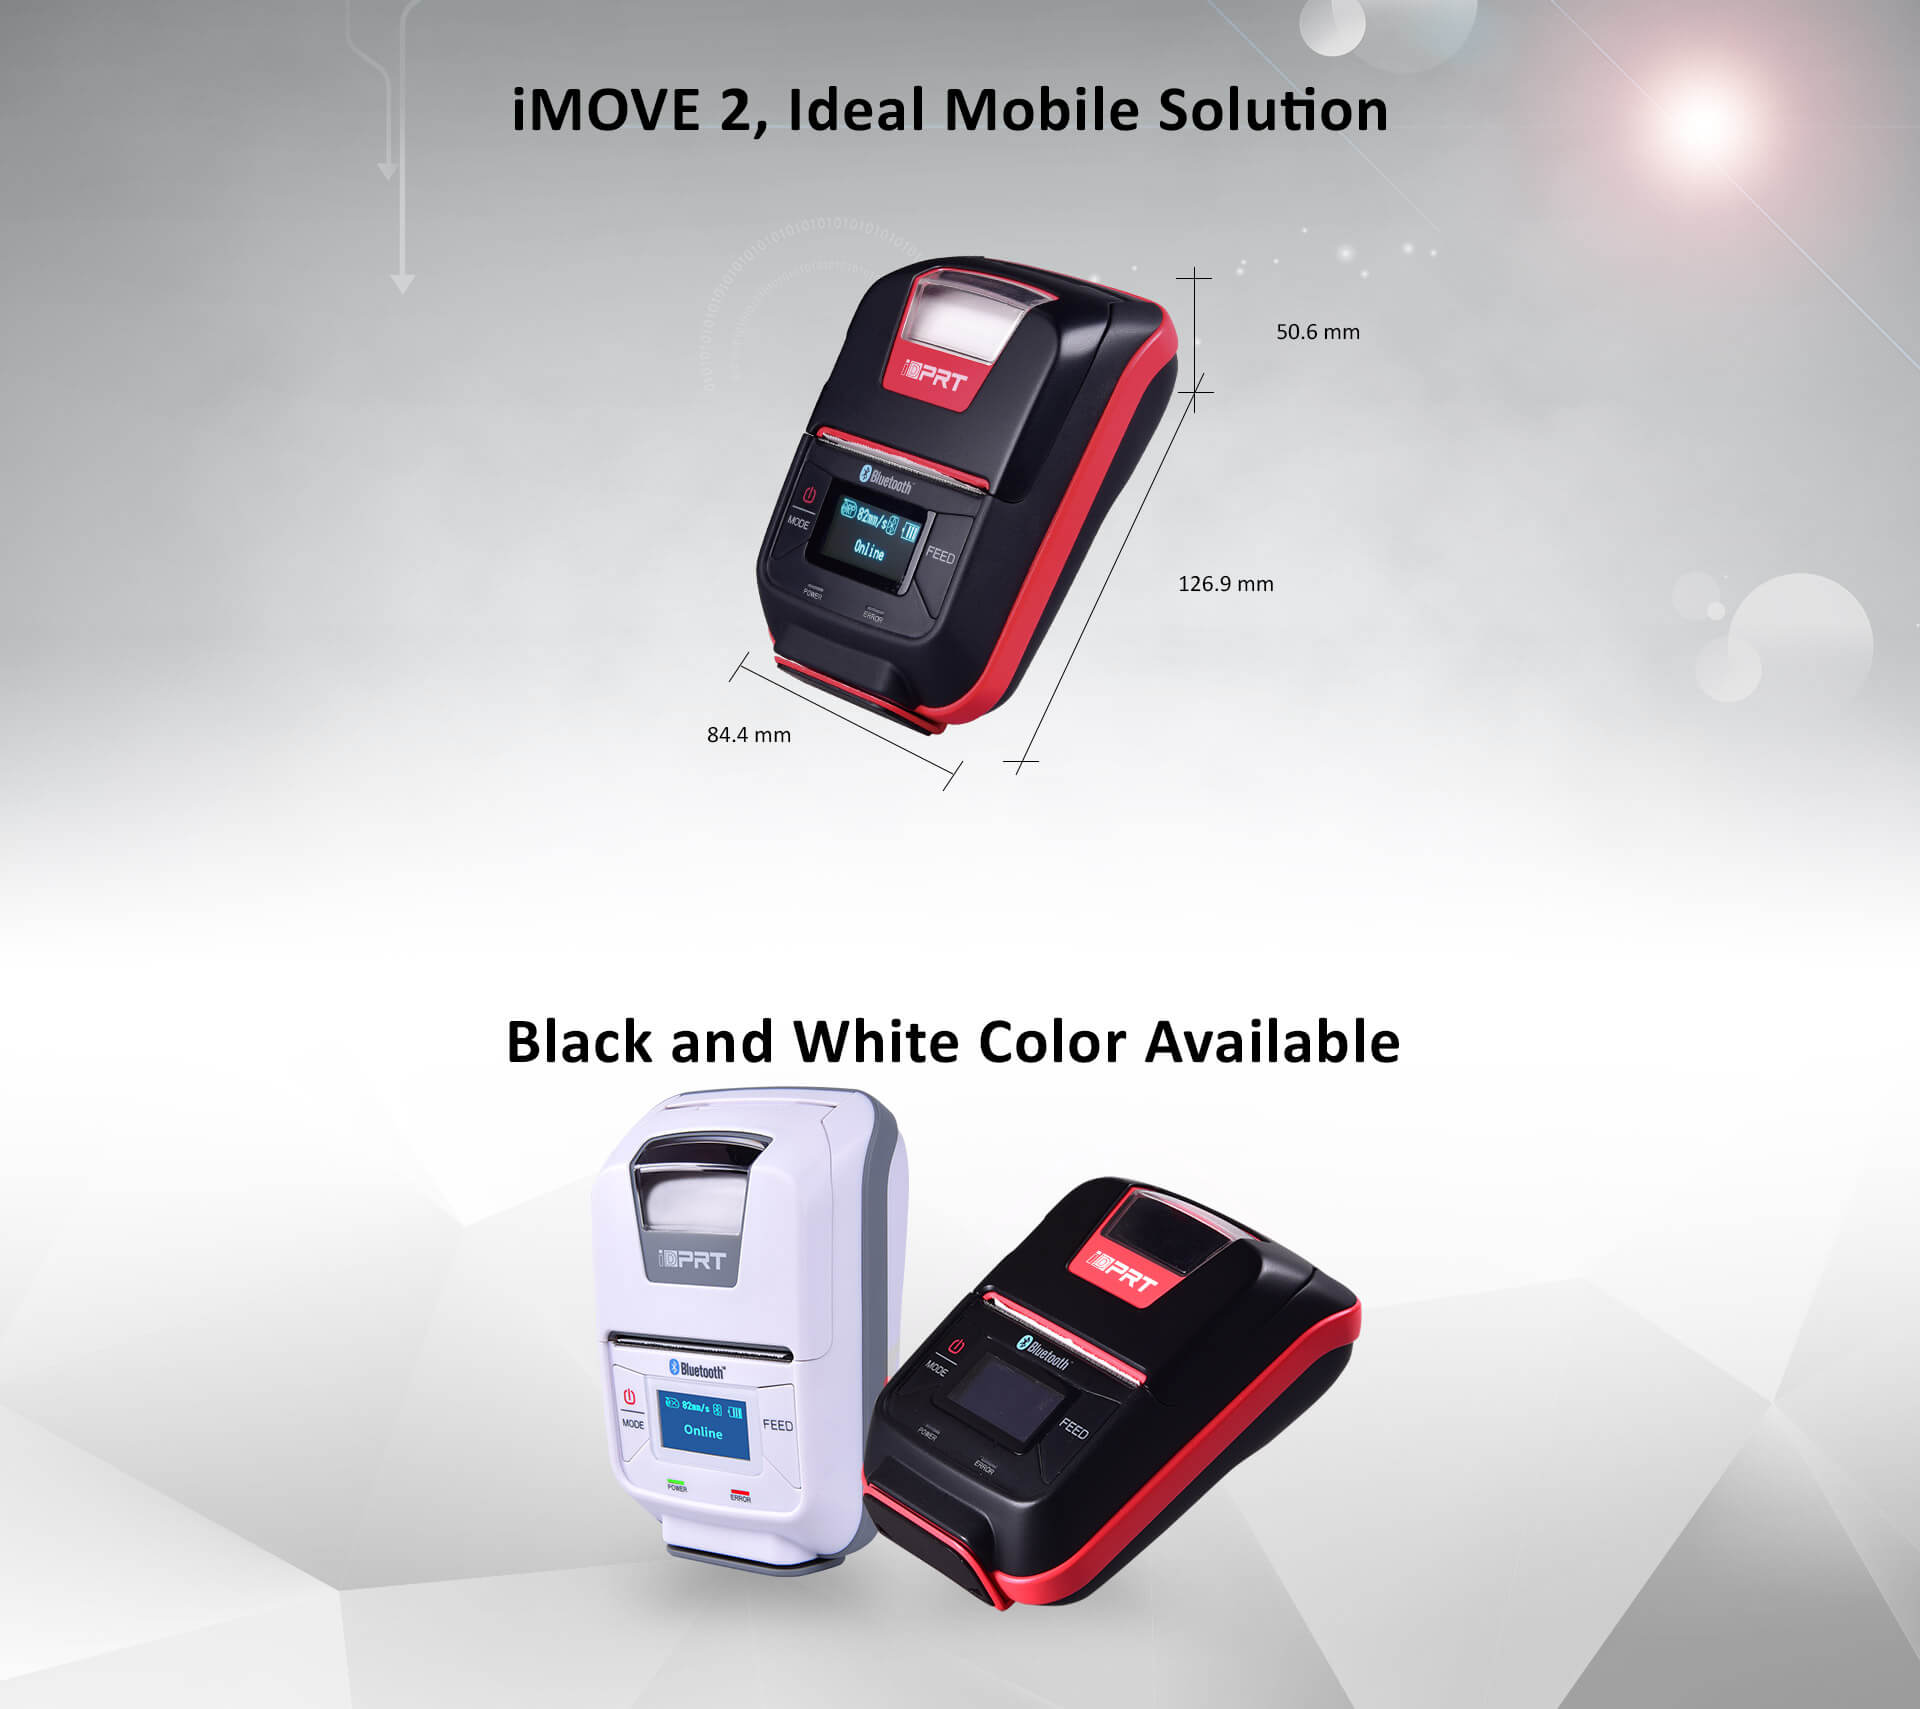 mobile thermal printer iMOVE 2